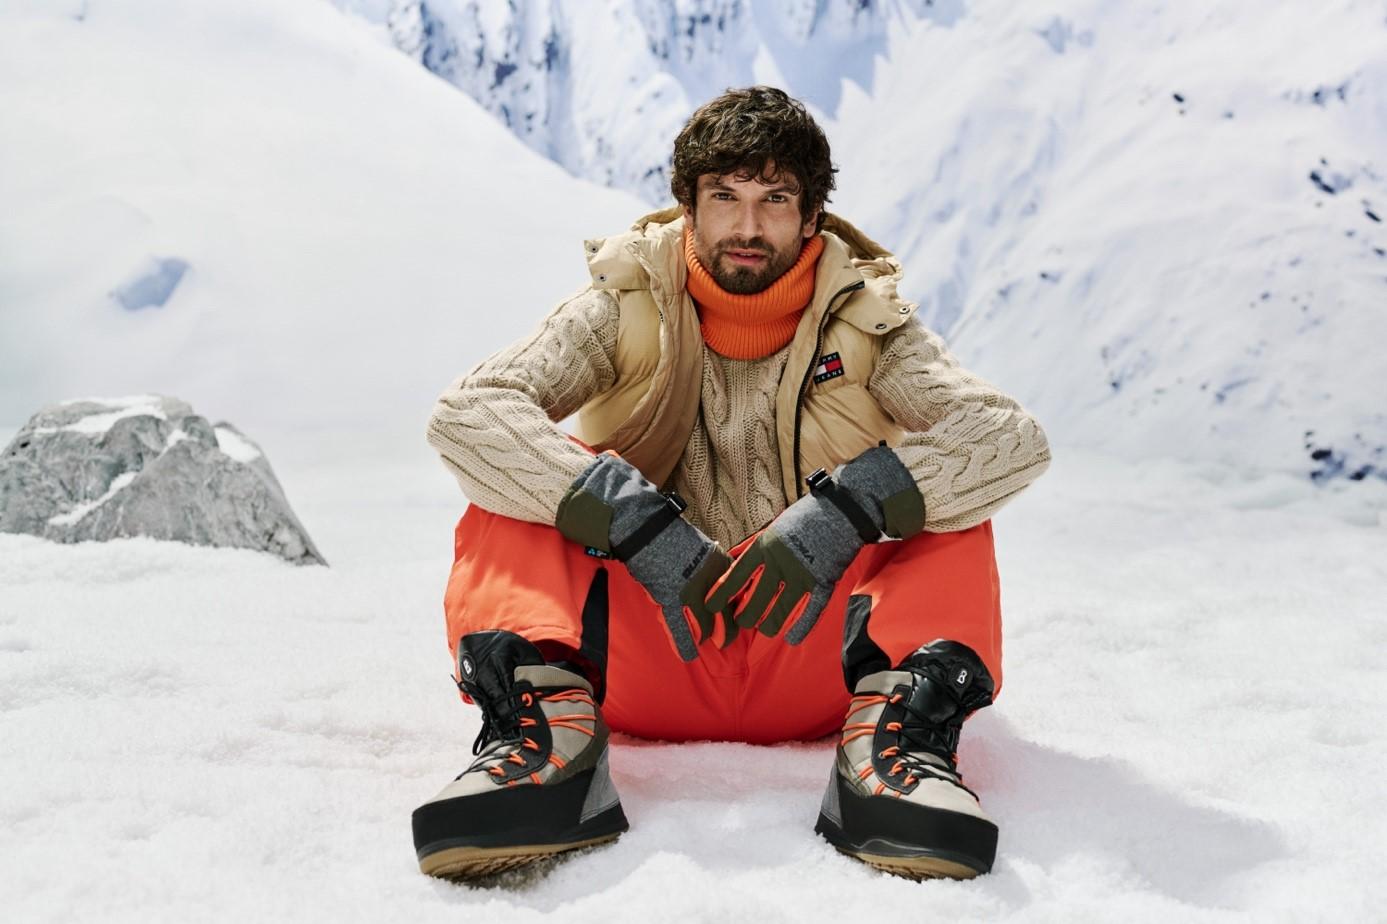 Obraz zawierający śnieg, osoba, obuwie, ubrania

Opis wygenerowany automatycznie